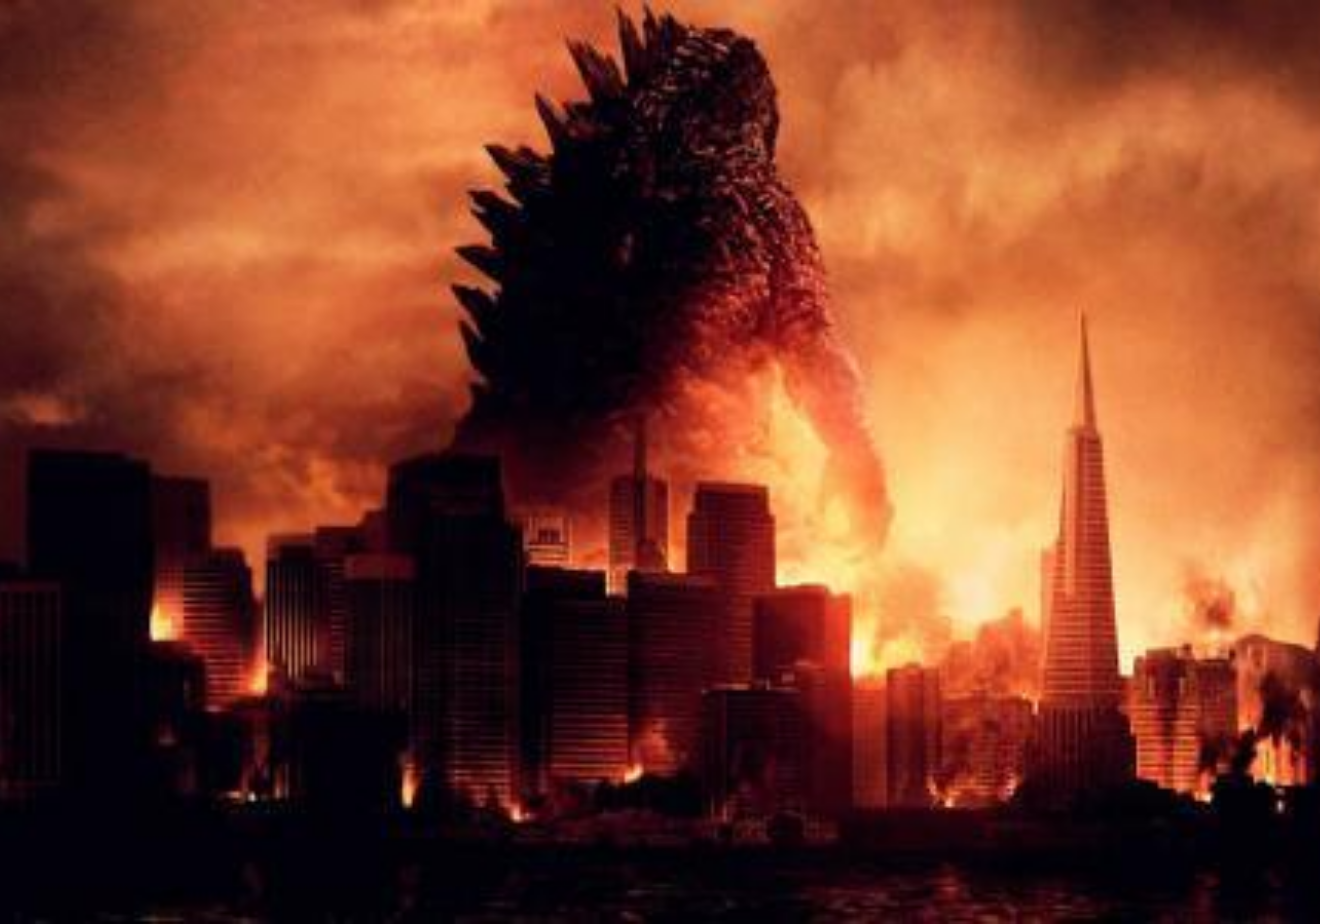 蓝光原盘 [哥斯拉大战机械哥斯拉].Godzilla.vs.Mechagodzilla.II.1993.JPN.BluRay.1080p ...